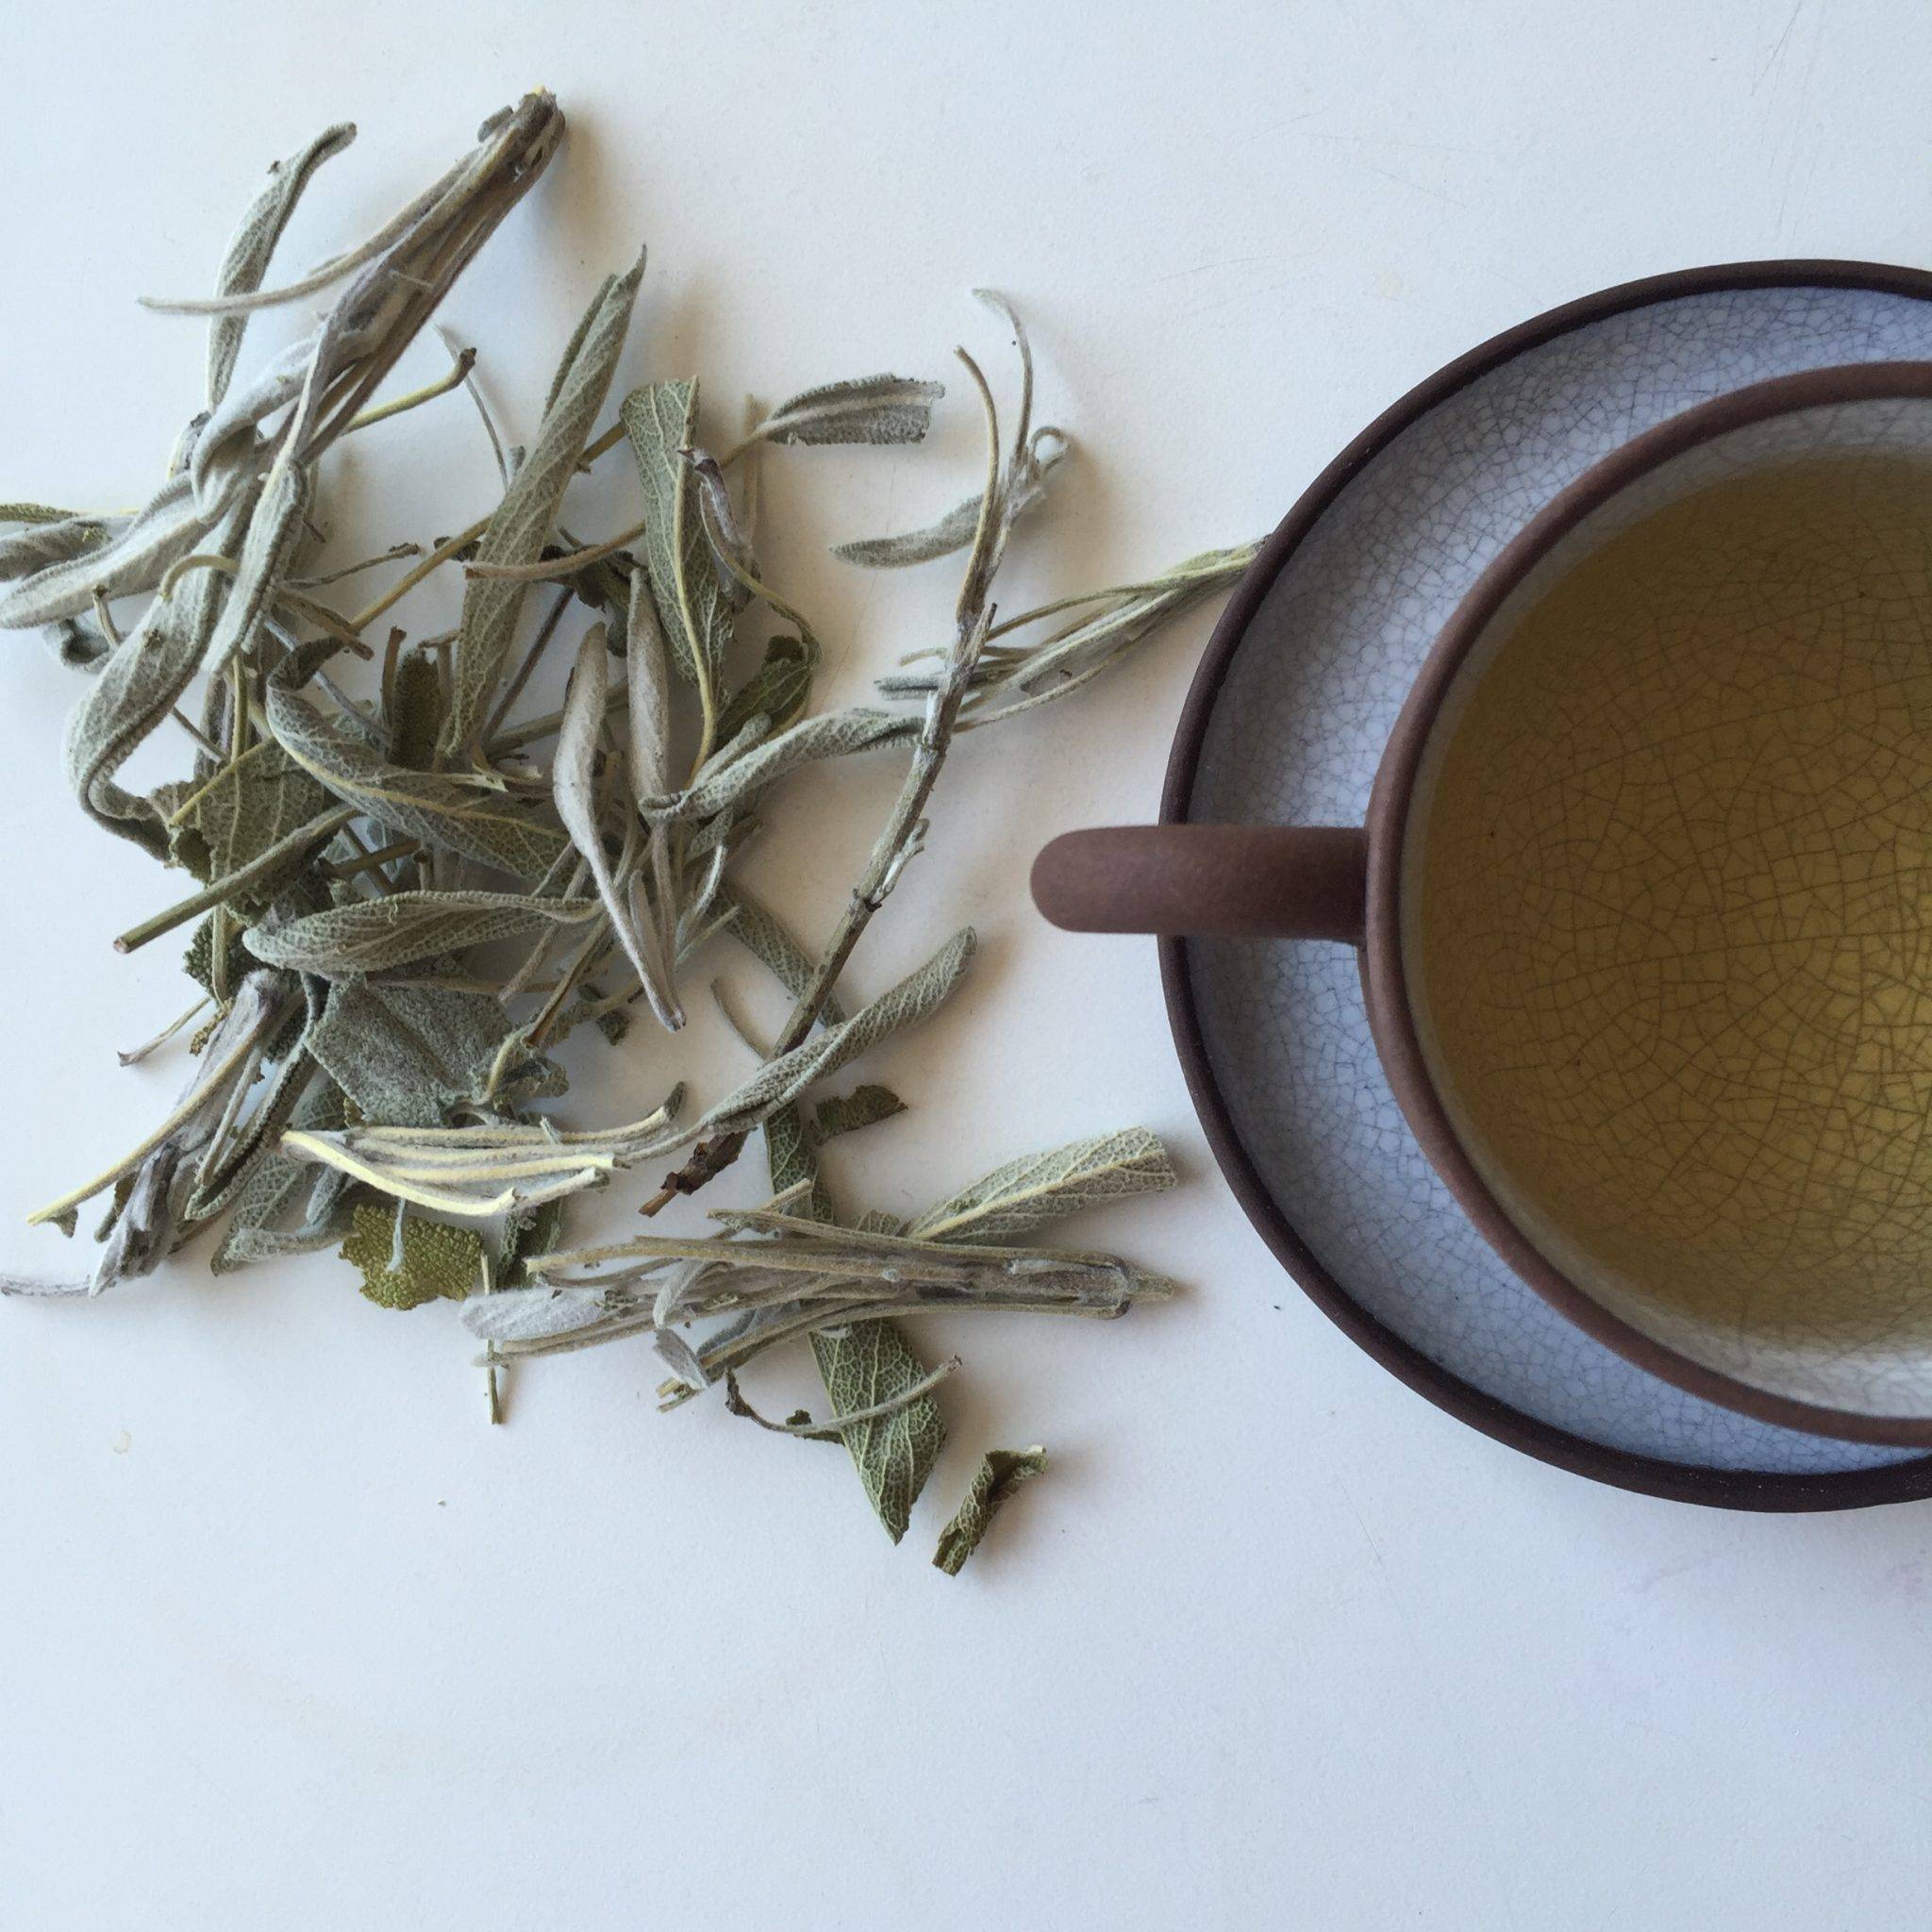 Чай из шалфея: как заваривать, показания к применению, польза и вред